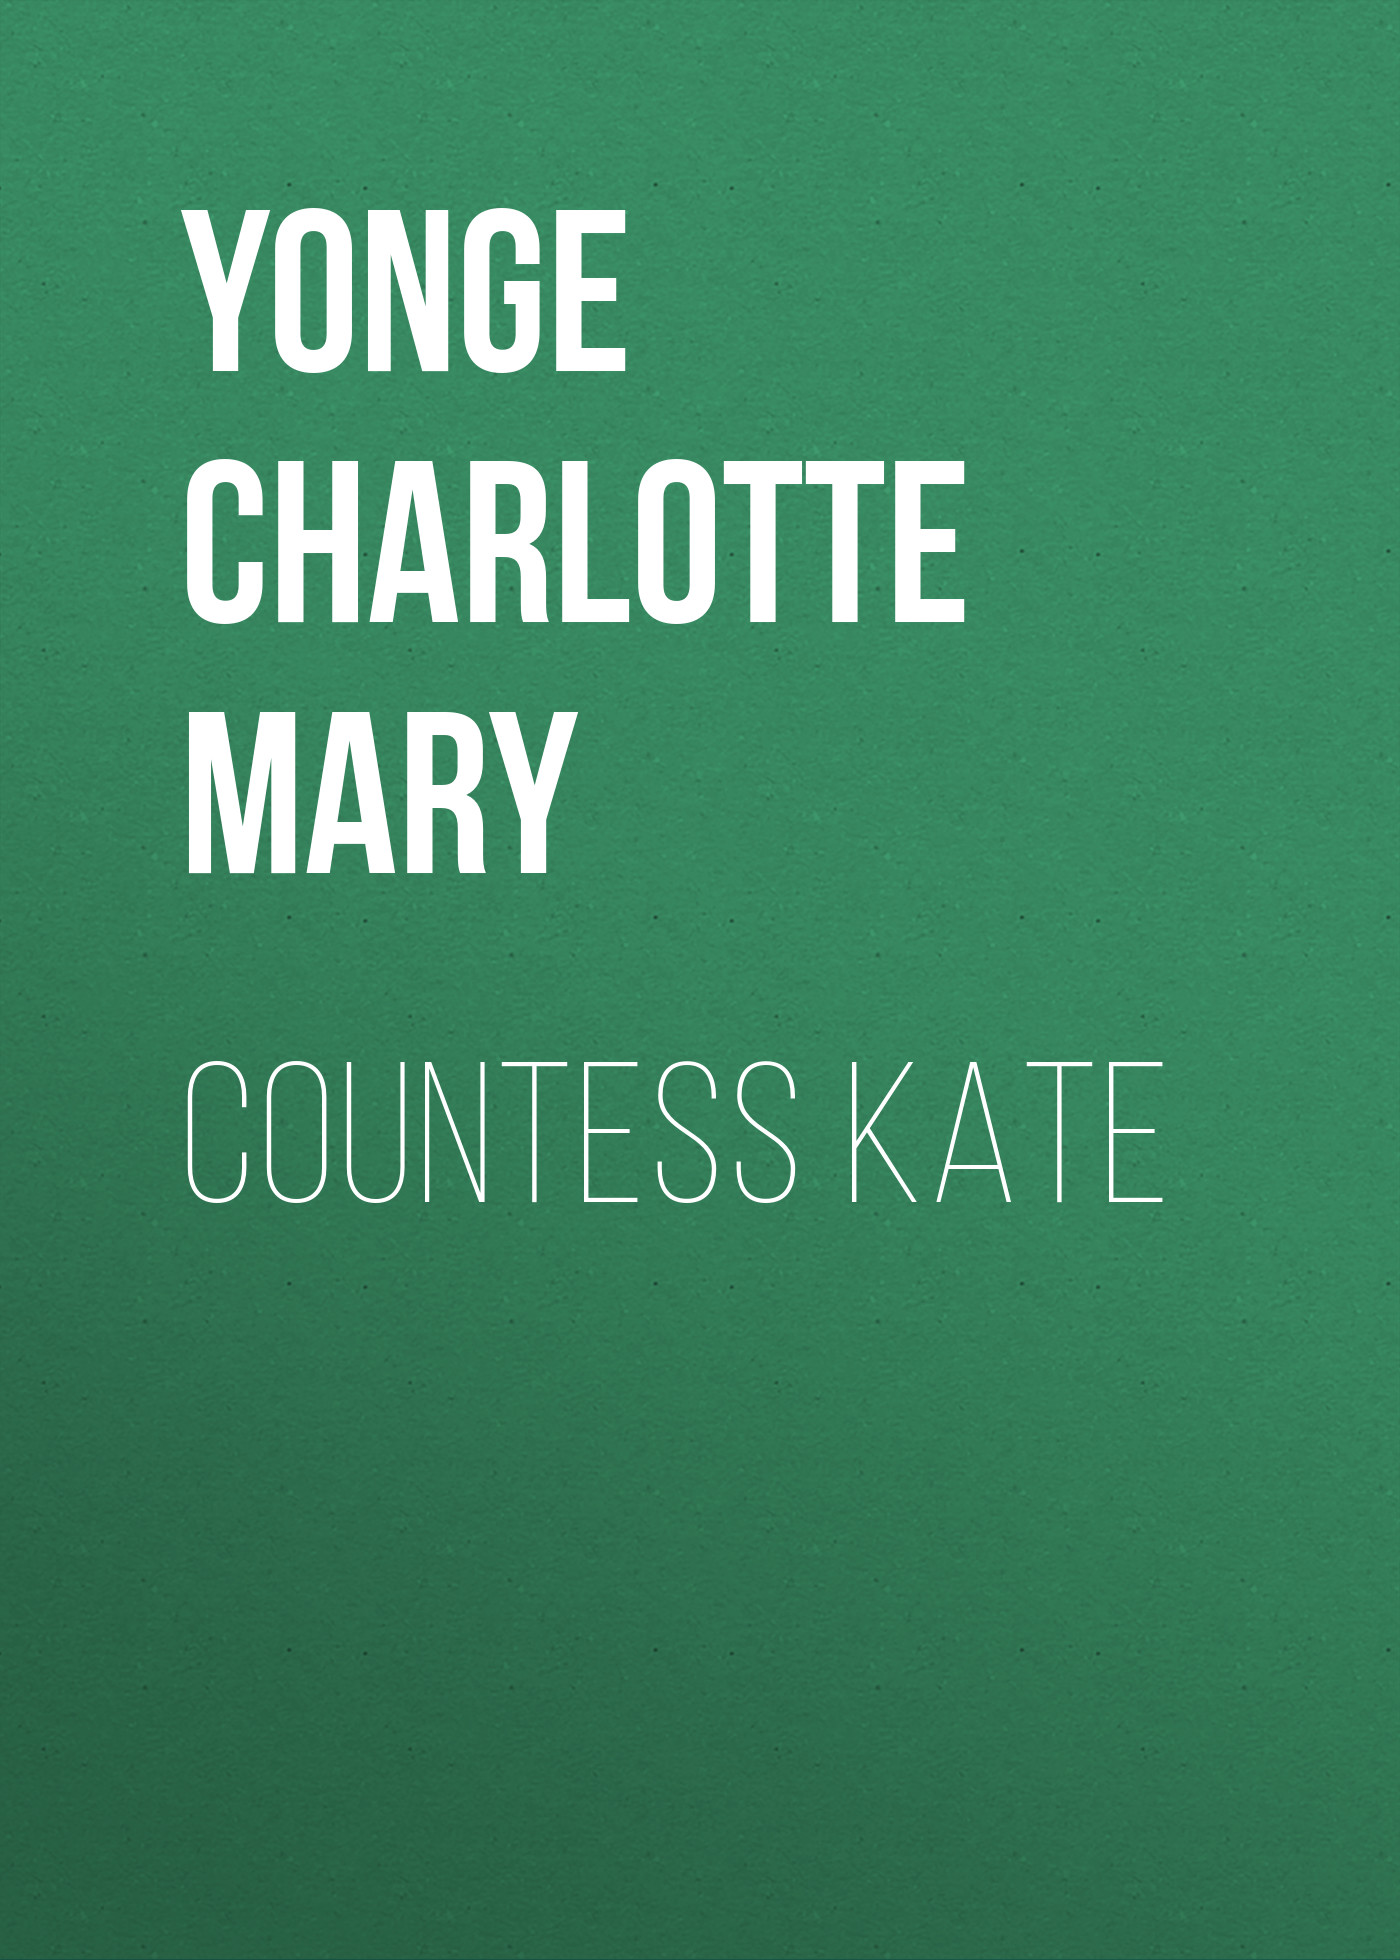 Книга Countess Kate из серии , созданная Charlotte Yonge, может относится к жанру Зарубежные детские книги, Литература 19 века, Зарубежная старинная литература, Зарубежная классика. Стоимость электронной книги Countess Kate с идентификатором 36095589 составляет 0 руб.